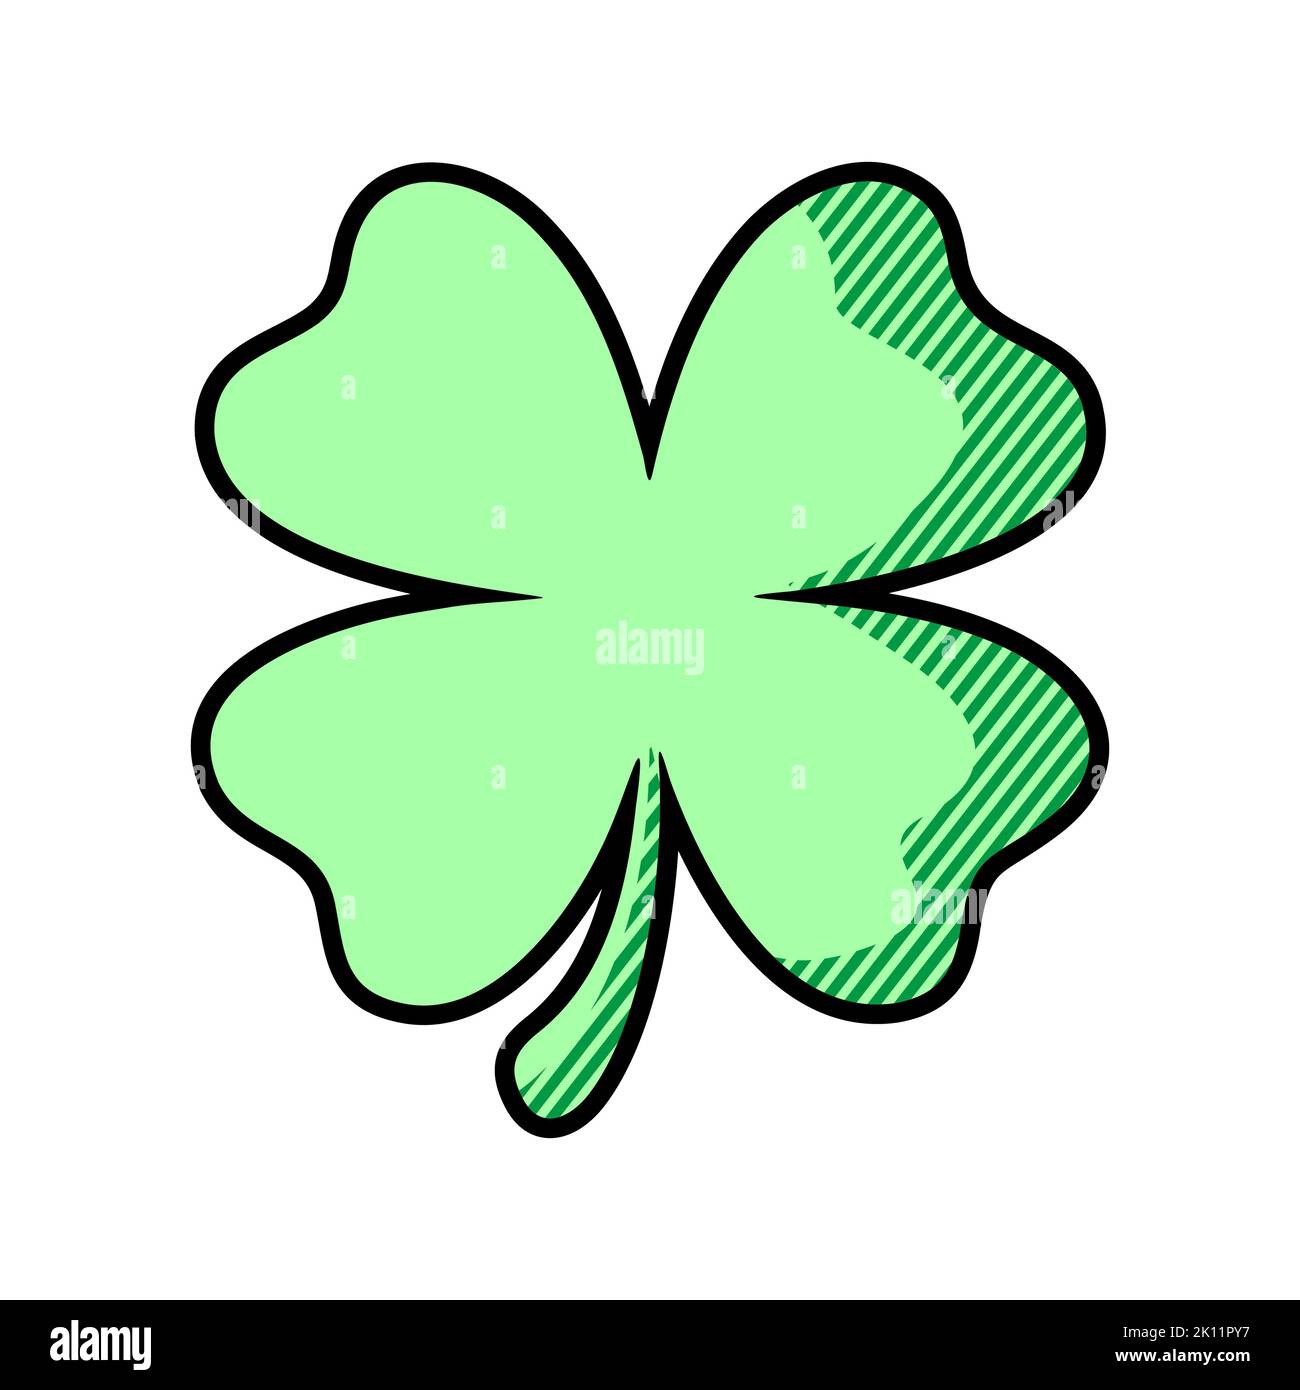 Vektor-Symbol für grünen Kleeblatt. St. Patrick Tag Symbol, Kobold Blatt Zeichen. Schamrock Kleeblatt isoliertes, flaches Dekorelement. Logo-Abbildung. Stockfoto